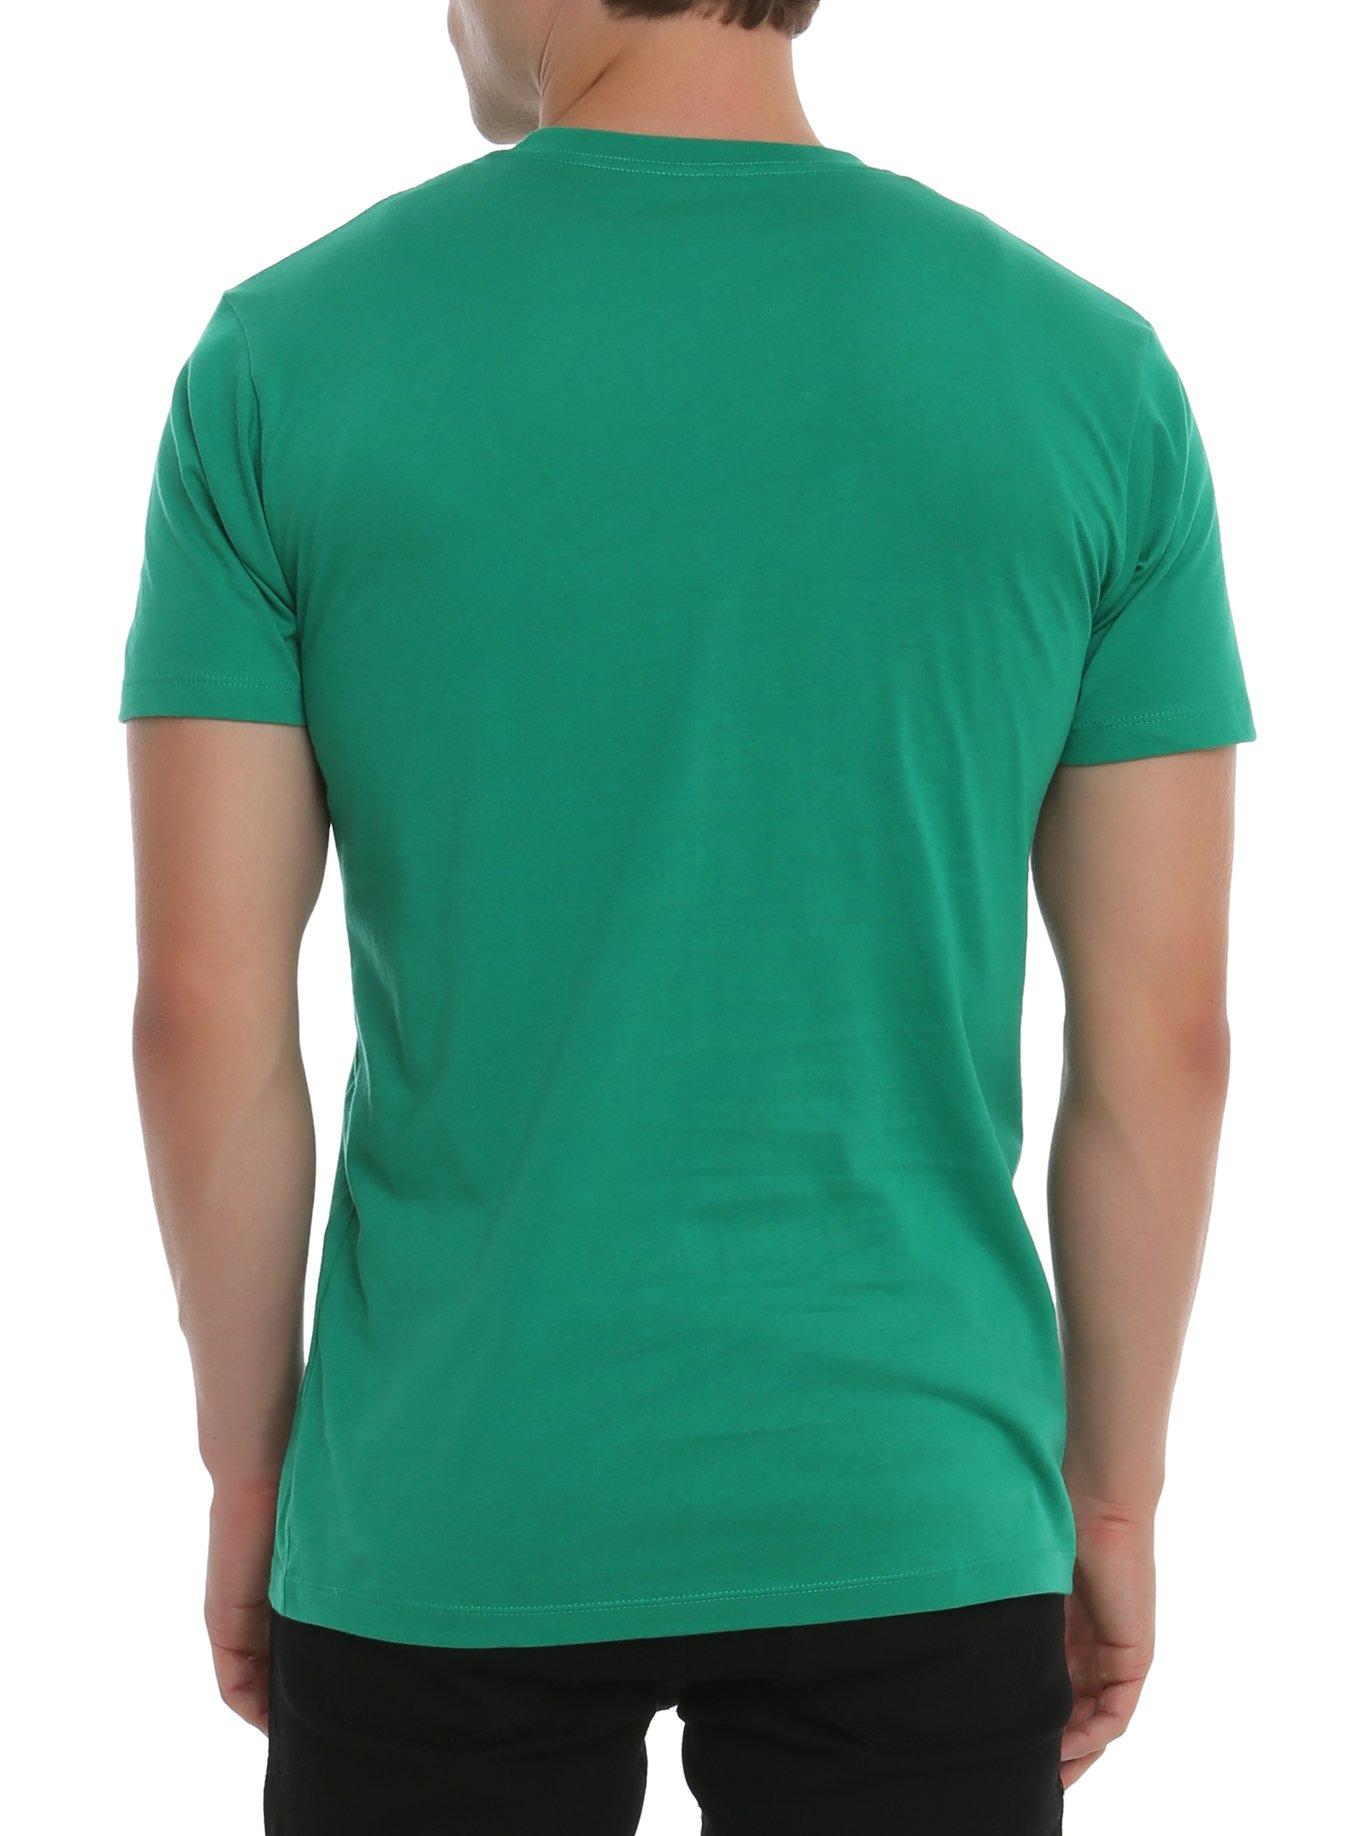 Mighty Morphin Power Rangers Green Ranger Costume T-Shirt, , alternate